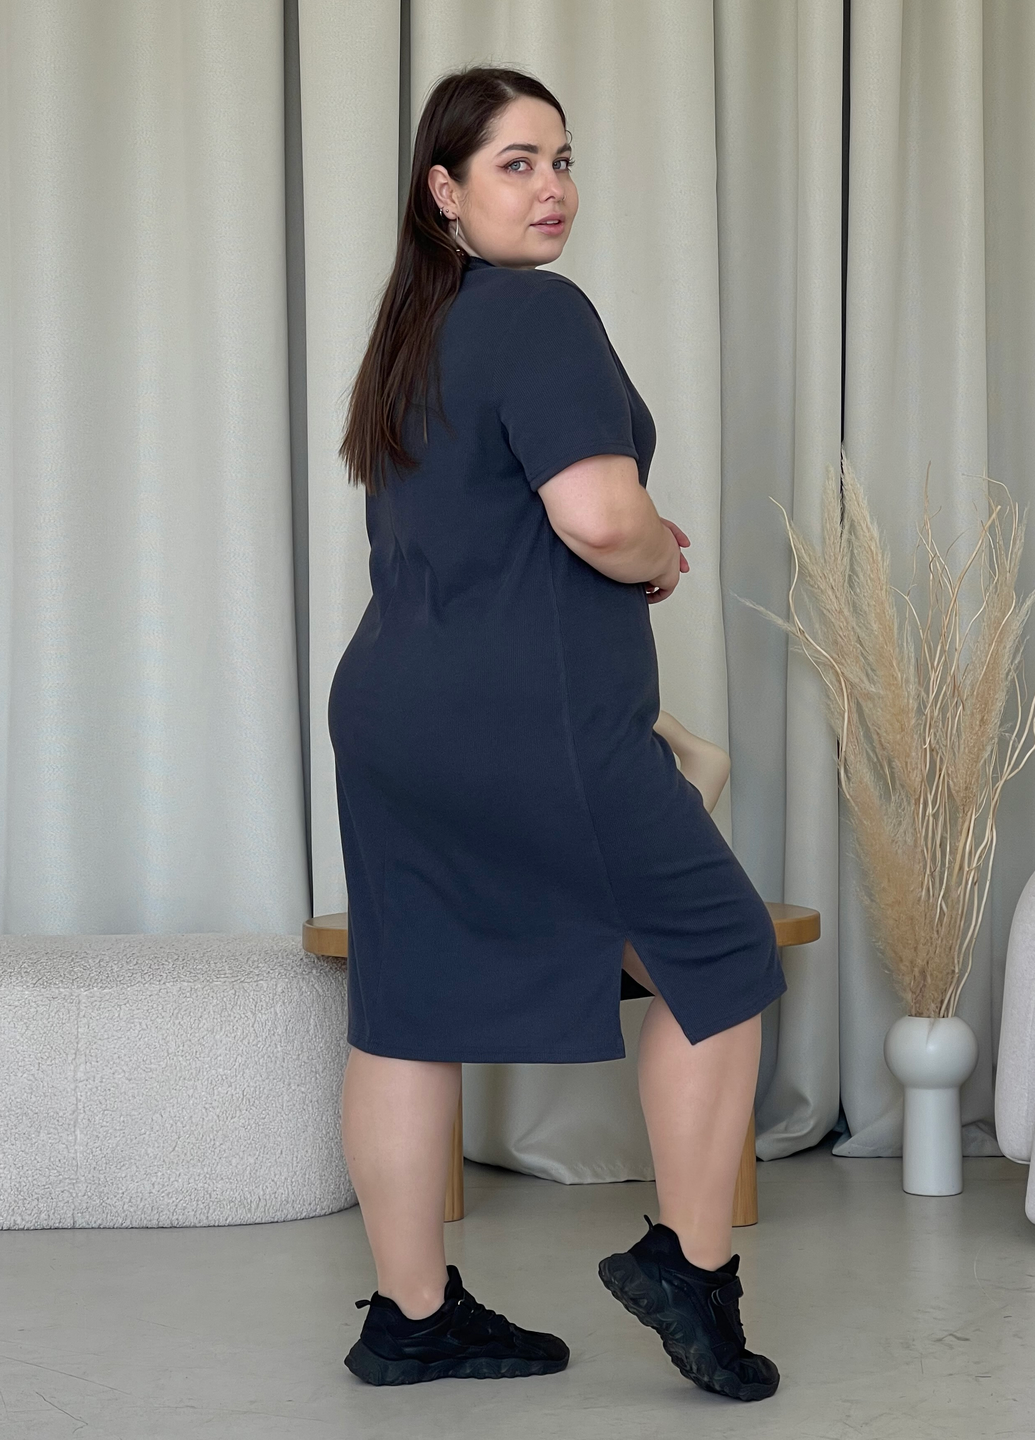 Купить Платье-футболка до колена в рубчик серое Merlini Милан 700000150 размер 42-44 (S-M) в интернет-магазине